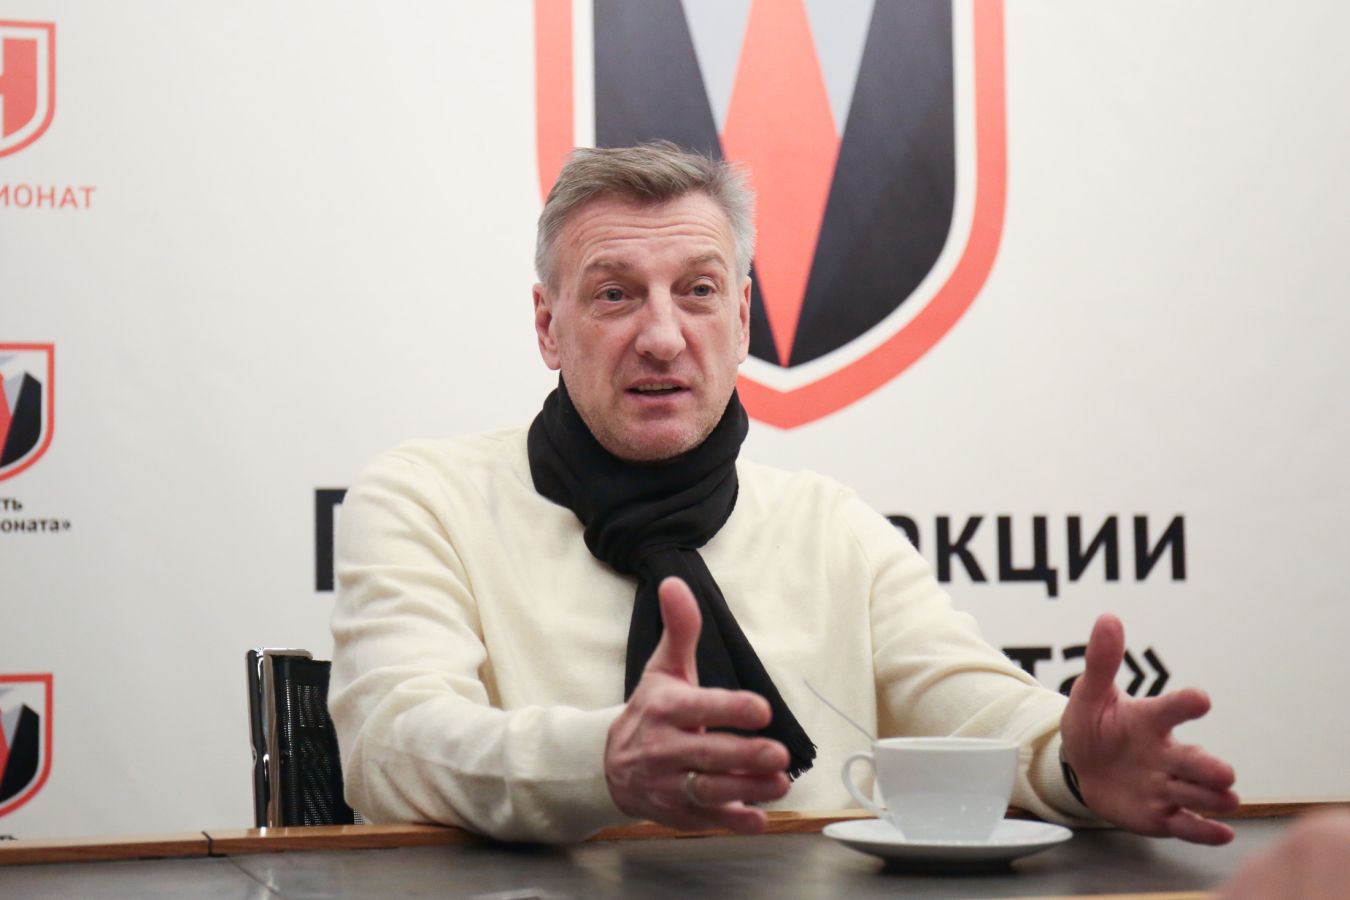 Кузнецов: «Сочи» пропагандирует атакующий футбол — с Бердыевым им придётся перестраиваться